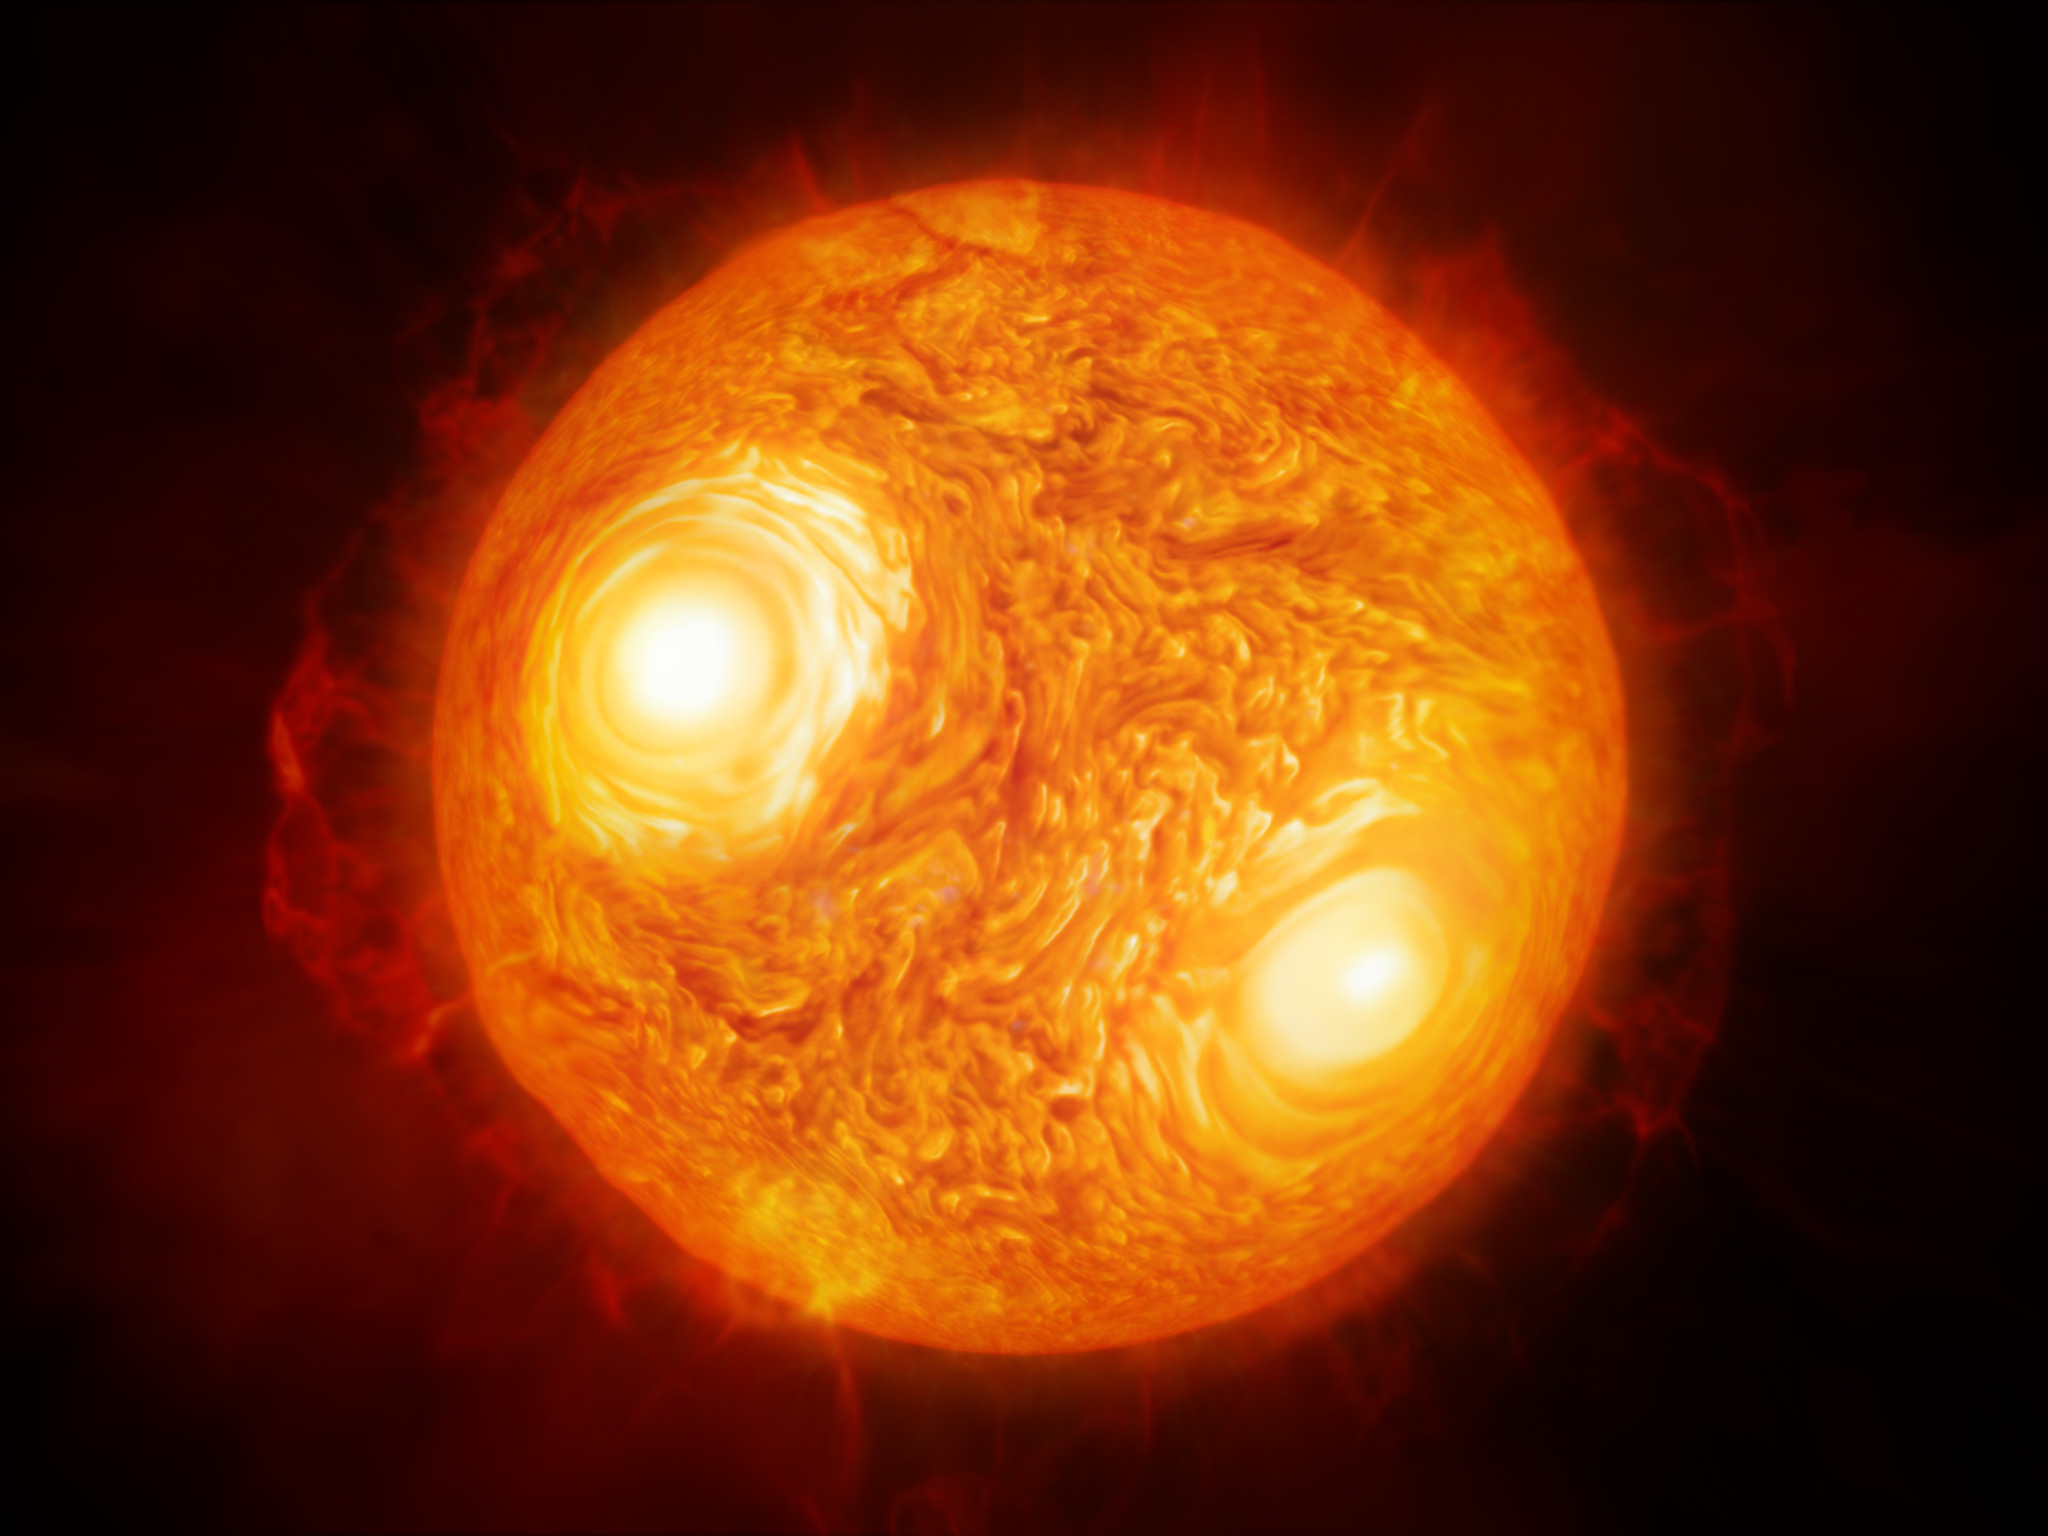 Sur cette vue d’artiste, figure la supergéante rouge Antarès dans la constellation du Scorpion. Grâce à l’interféromètre du Very Large Telescope de l’ESO, les astronomes ont réalisé l’image la plus détaillée à ce jour de cette étoile. Sur la base des mêmes données, ils ont également constitué la toute première cartographie des mouvements de matière au sein de l’atmosphère d’une étoile autre que le Soleil. © ESO/M. Kornmesser